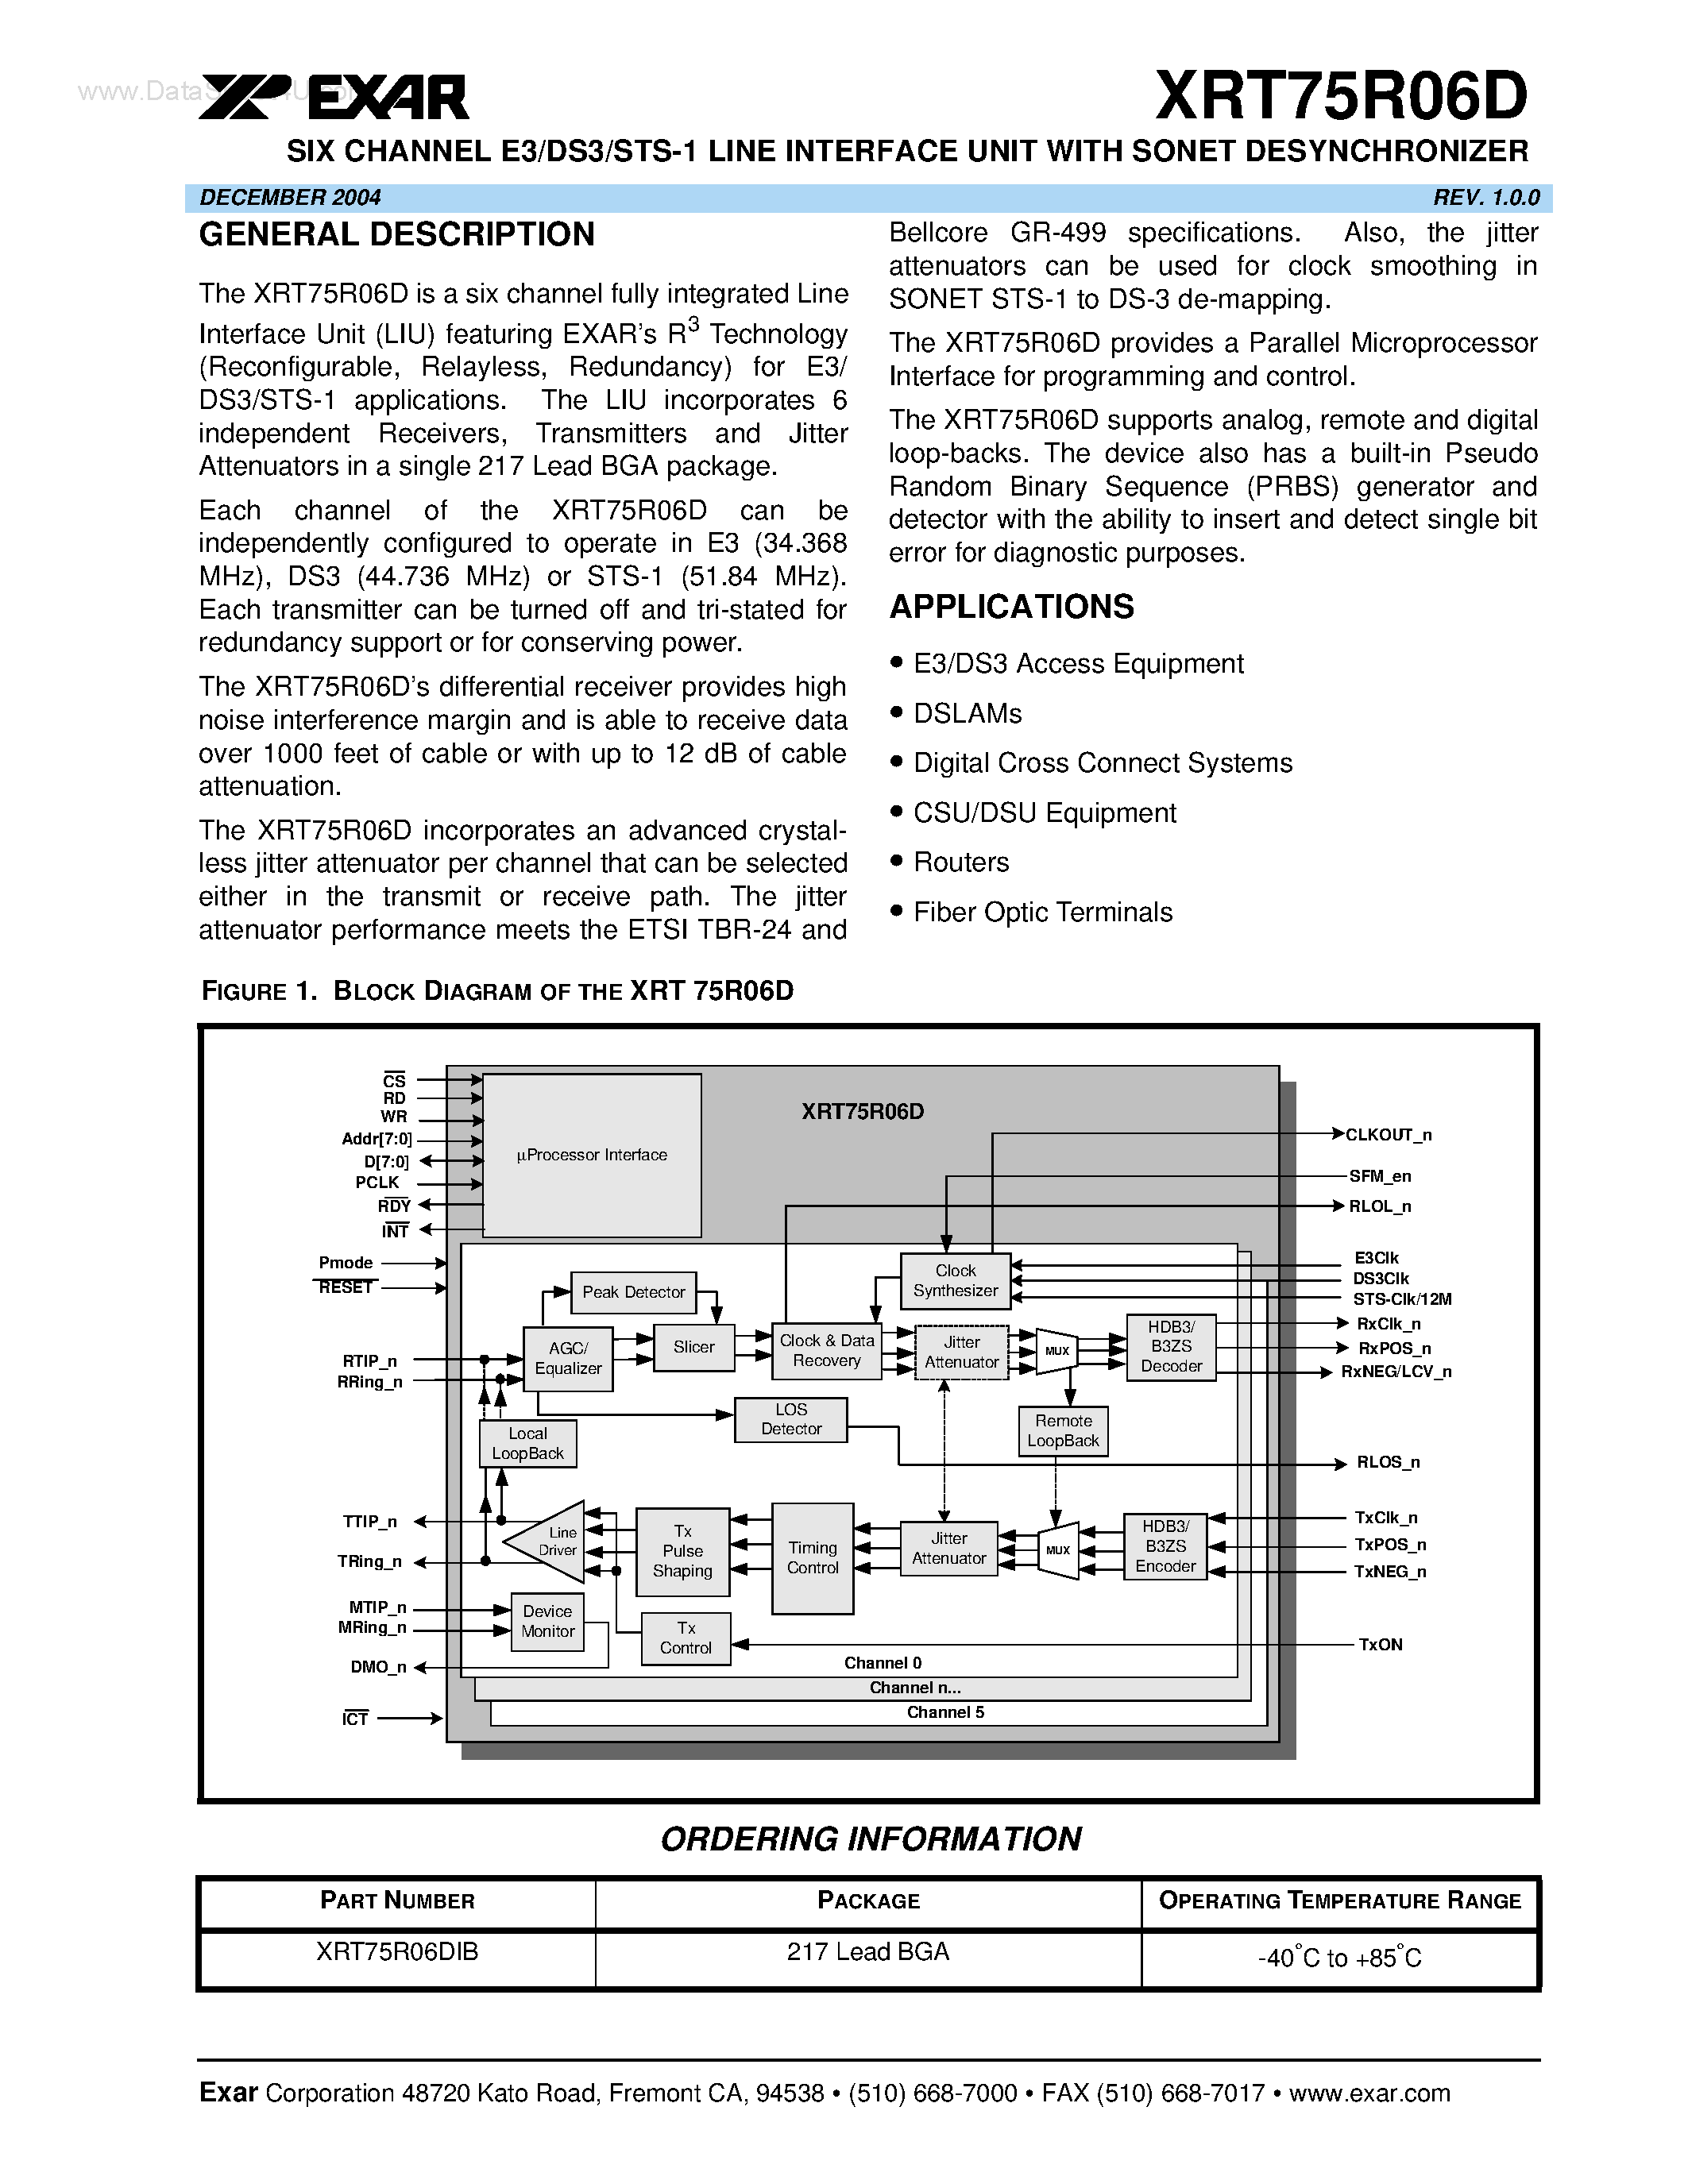 Даташит XRT75R06D - SIX CHANNEL E3/DS3/STS-1 LINE INTERFACE UNIT страница 1